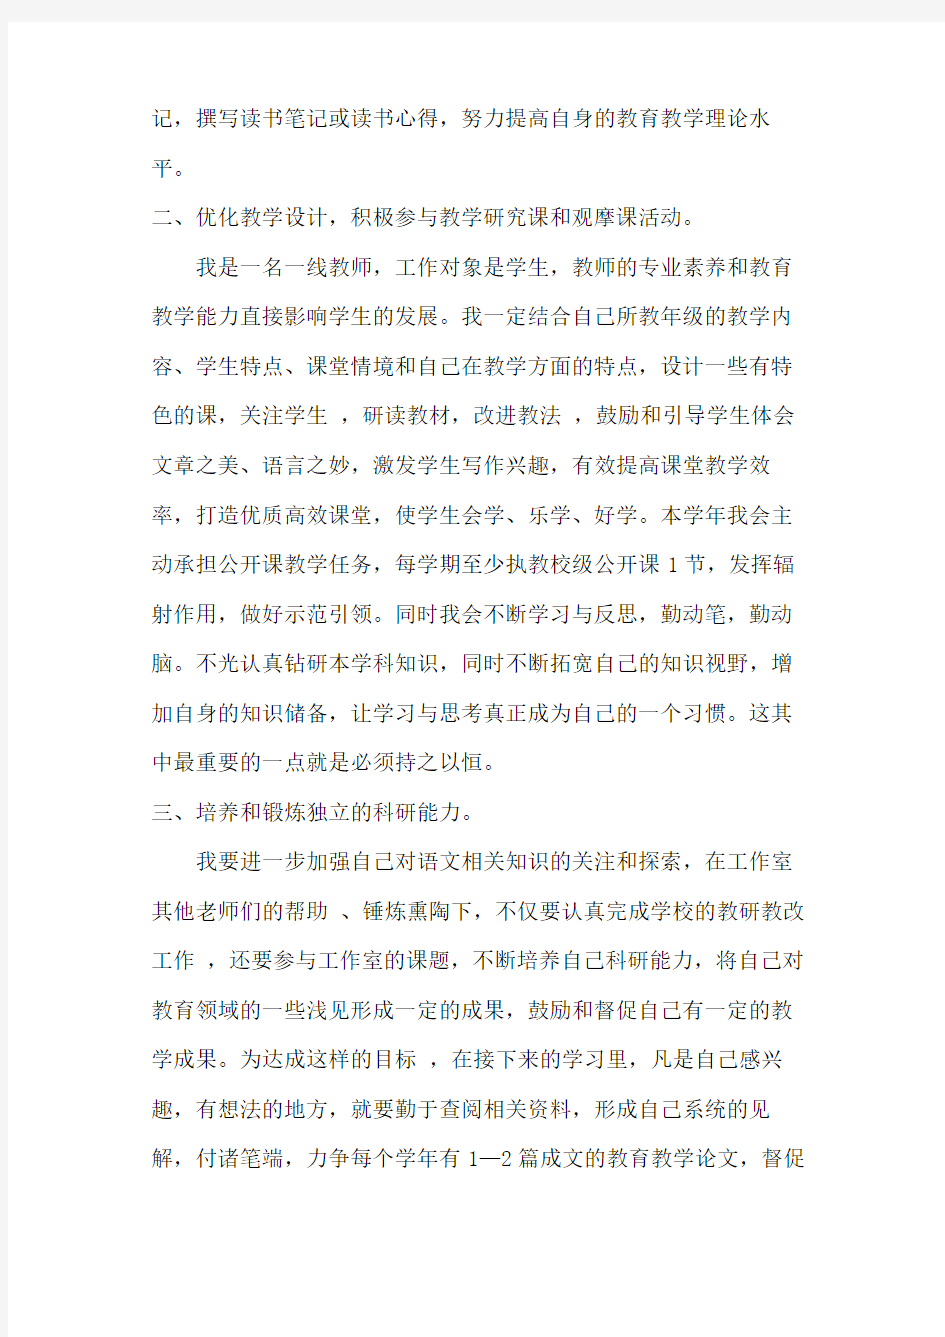 初中语文名师工作室个人年度计划(2020年)